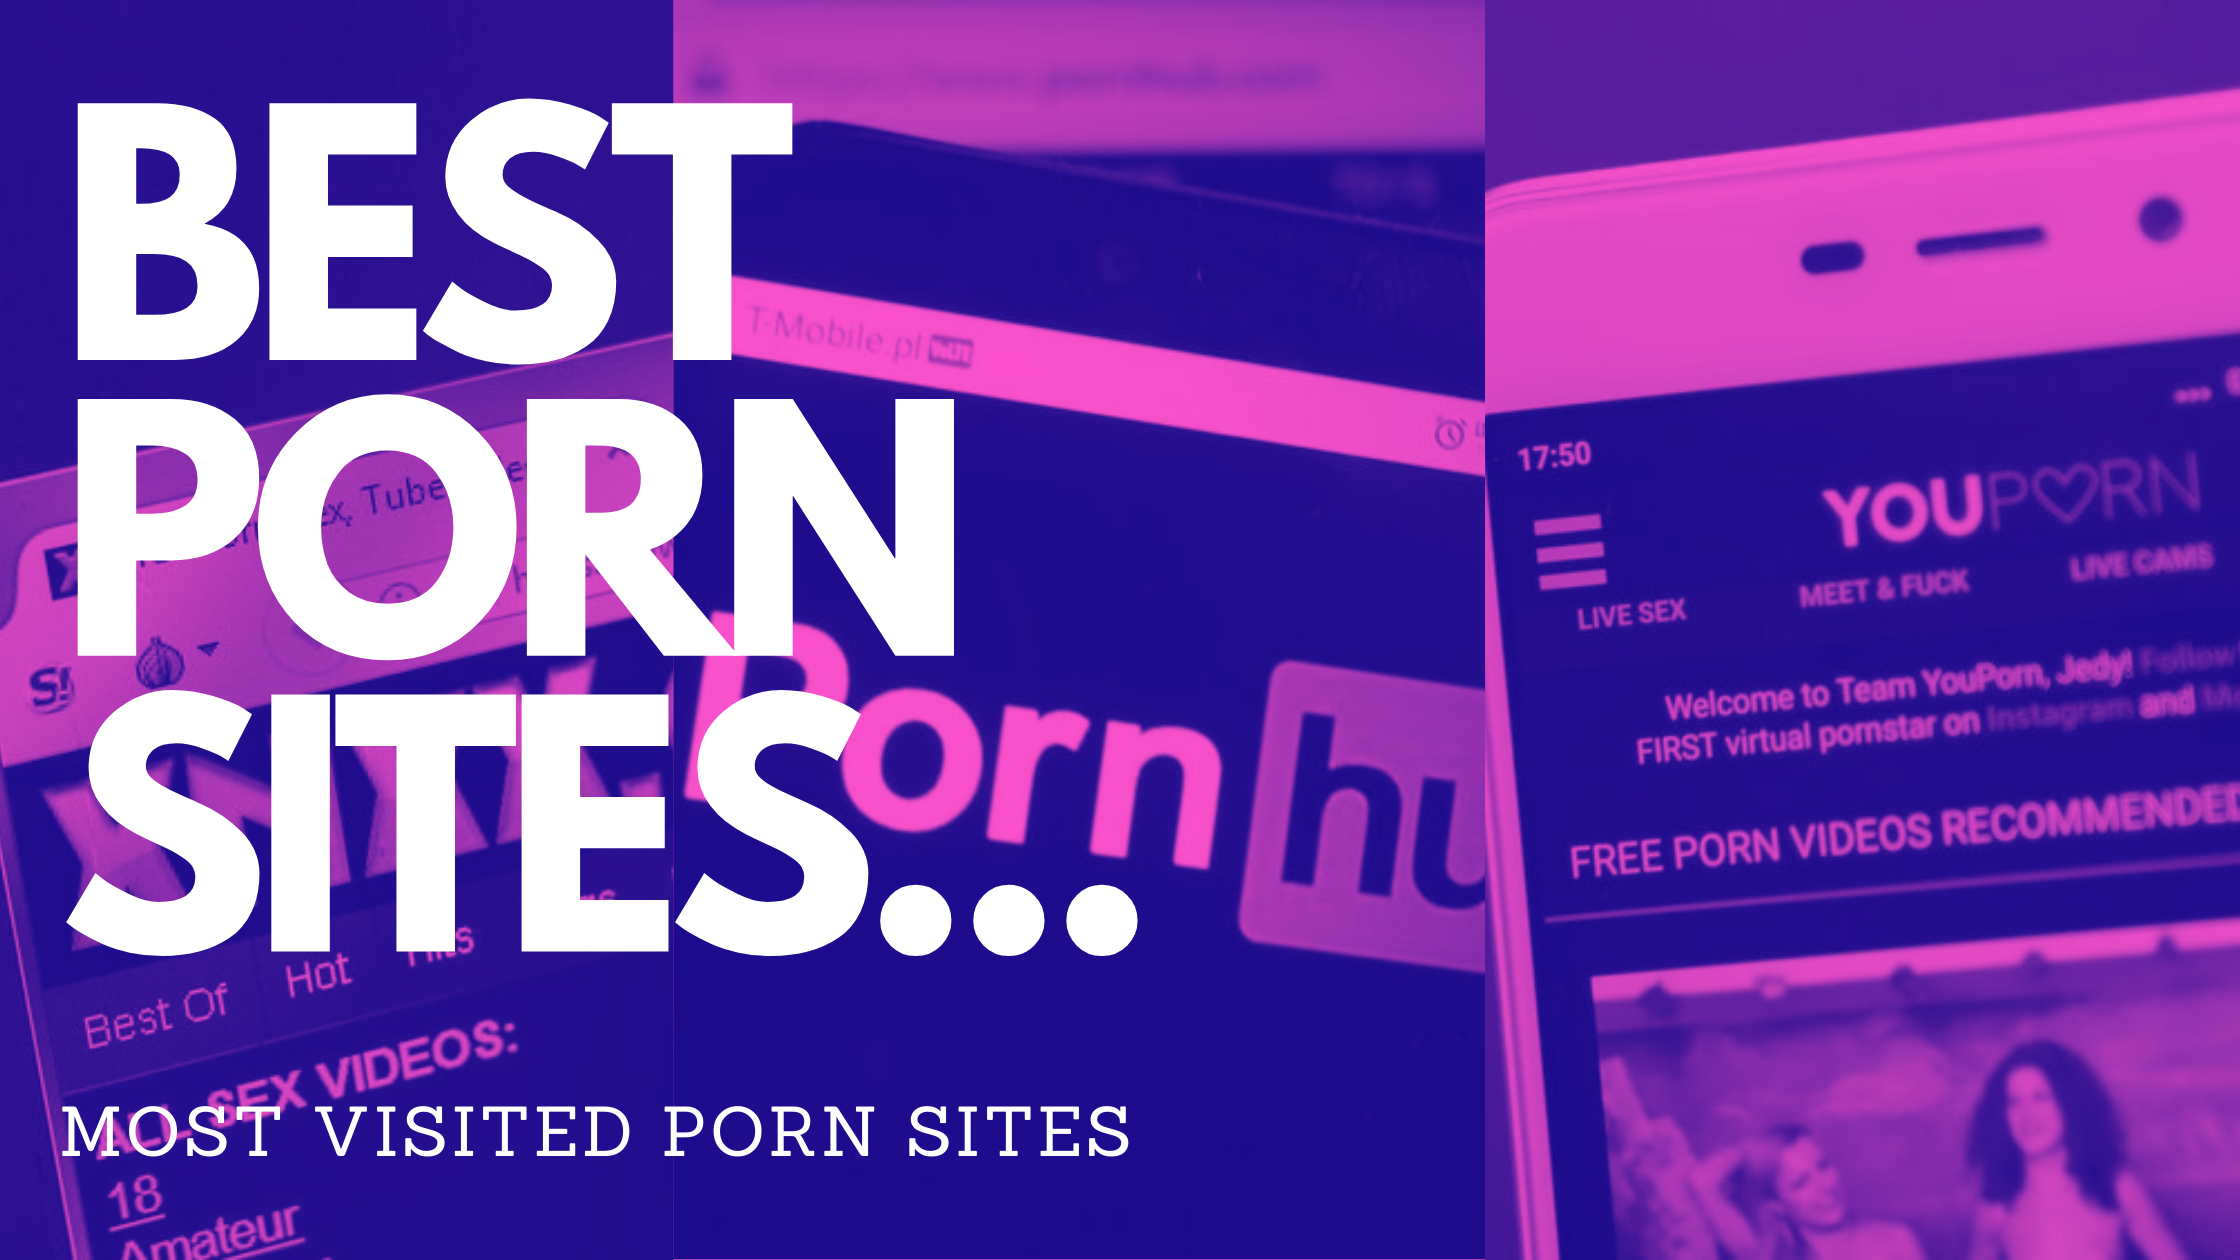 Videos free porn best Best Porn